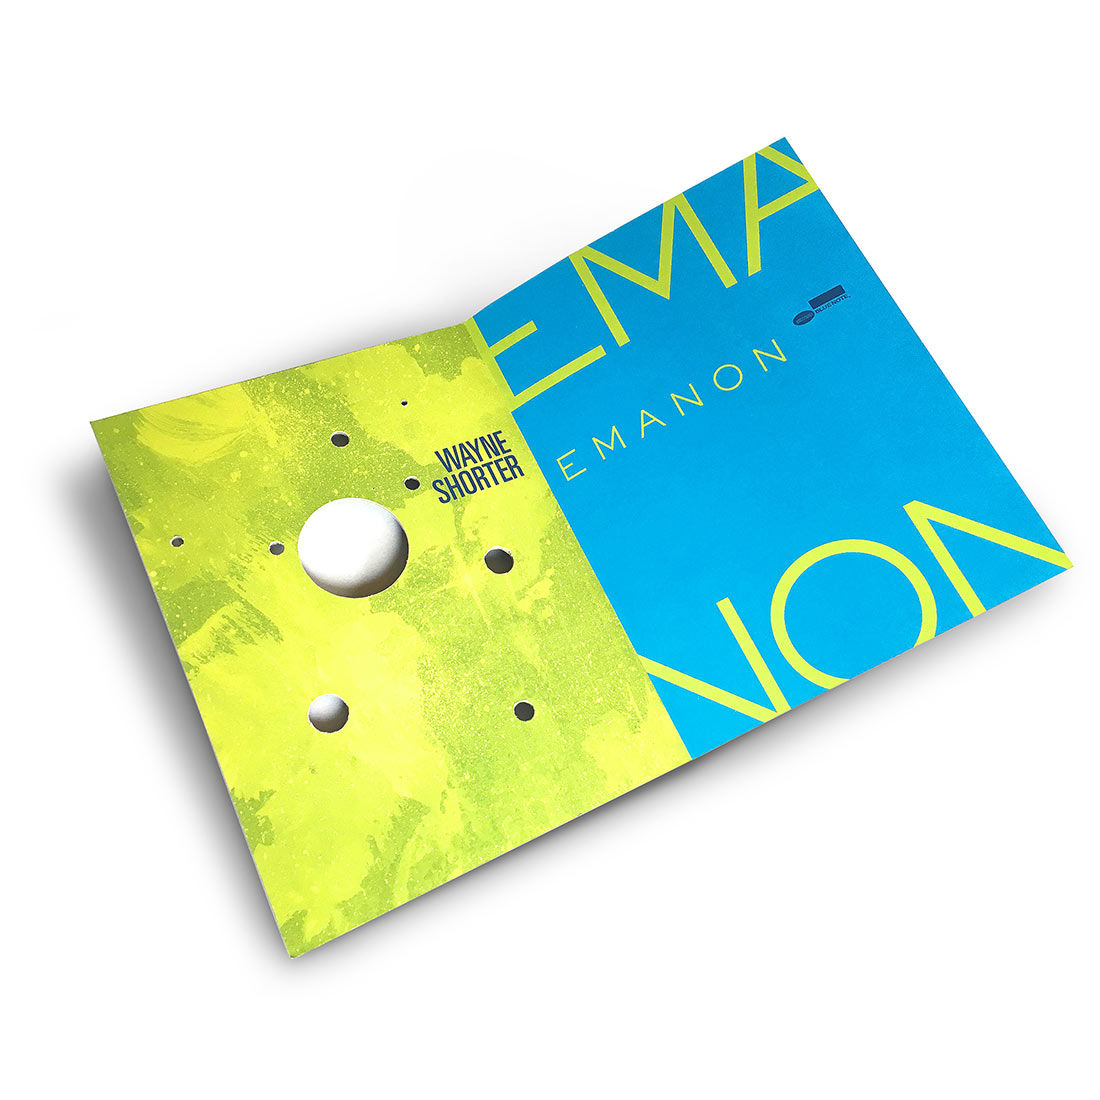 Wayne Shorter - Emanon: 3CD